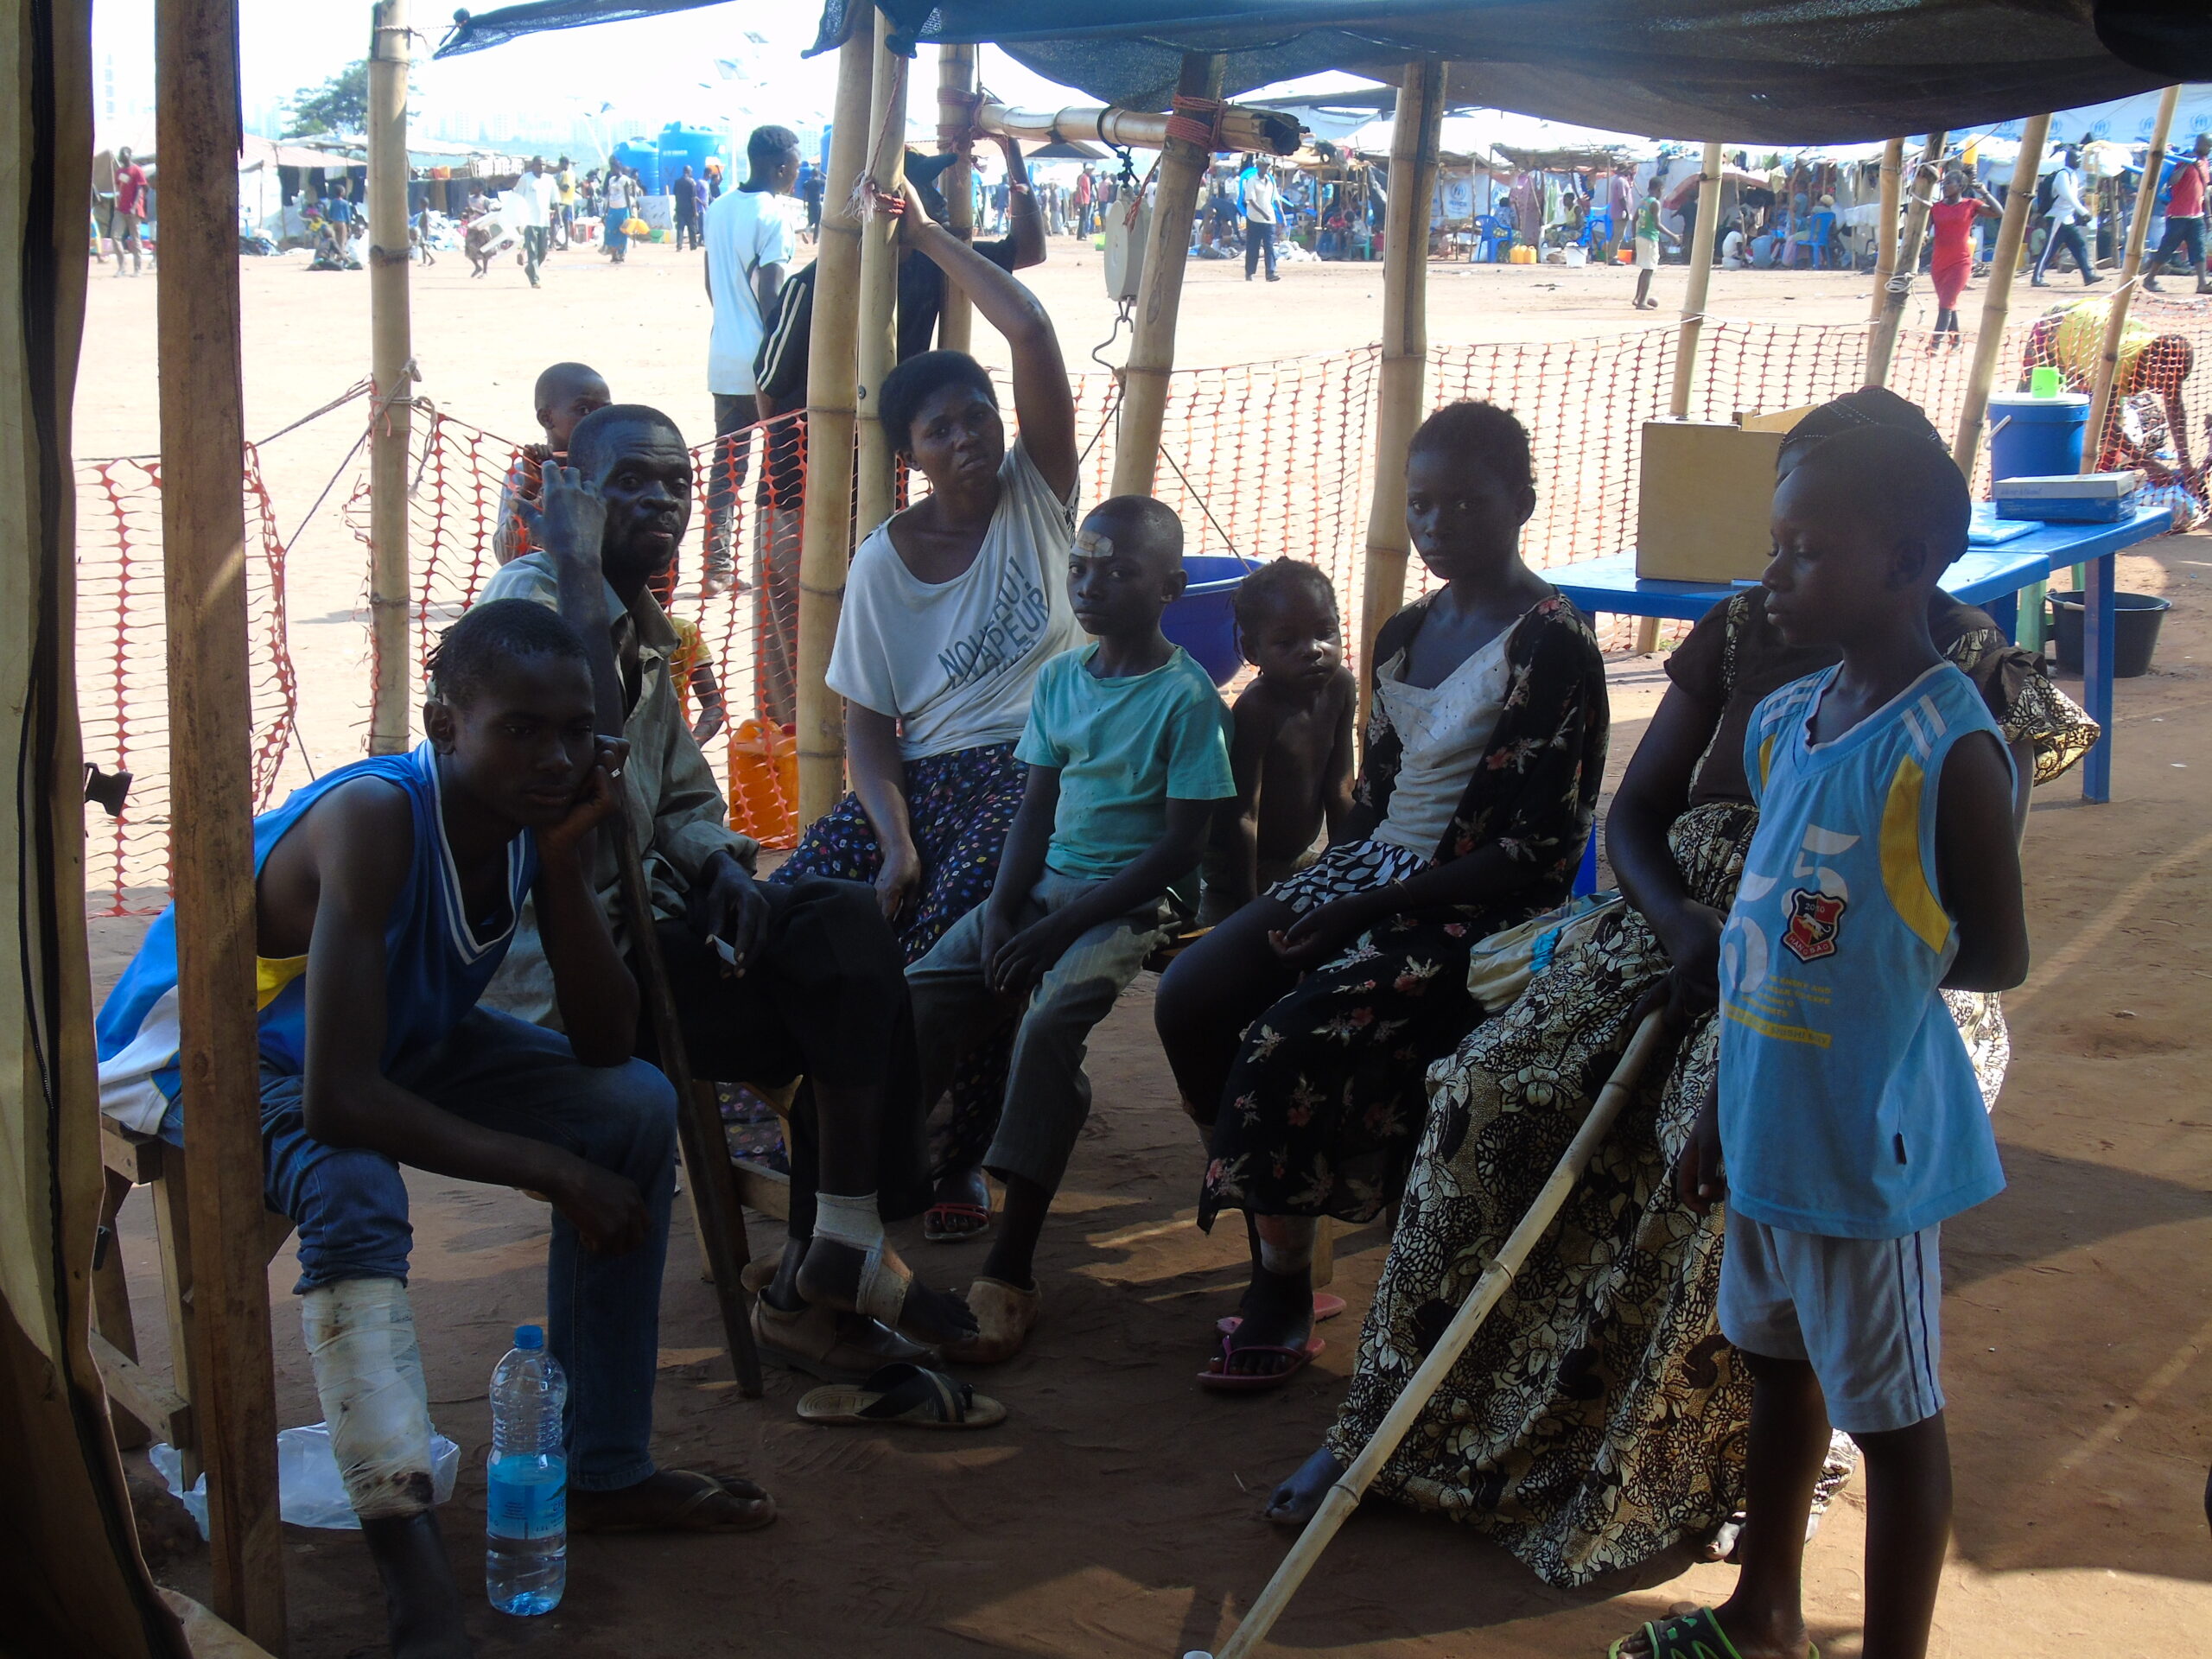 Situação dos refugiados na Lunda Norte Há um ano, na Província da Lunda Norte, houve um enorme fluxo migratório de pessoas vindas da República Democrática do Congo. Instalaram-se mais precisamente no município do Dundo, mais de 30 mil refugiados.